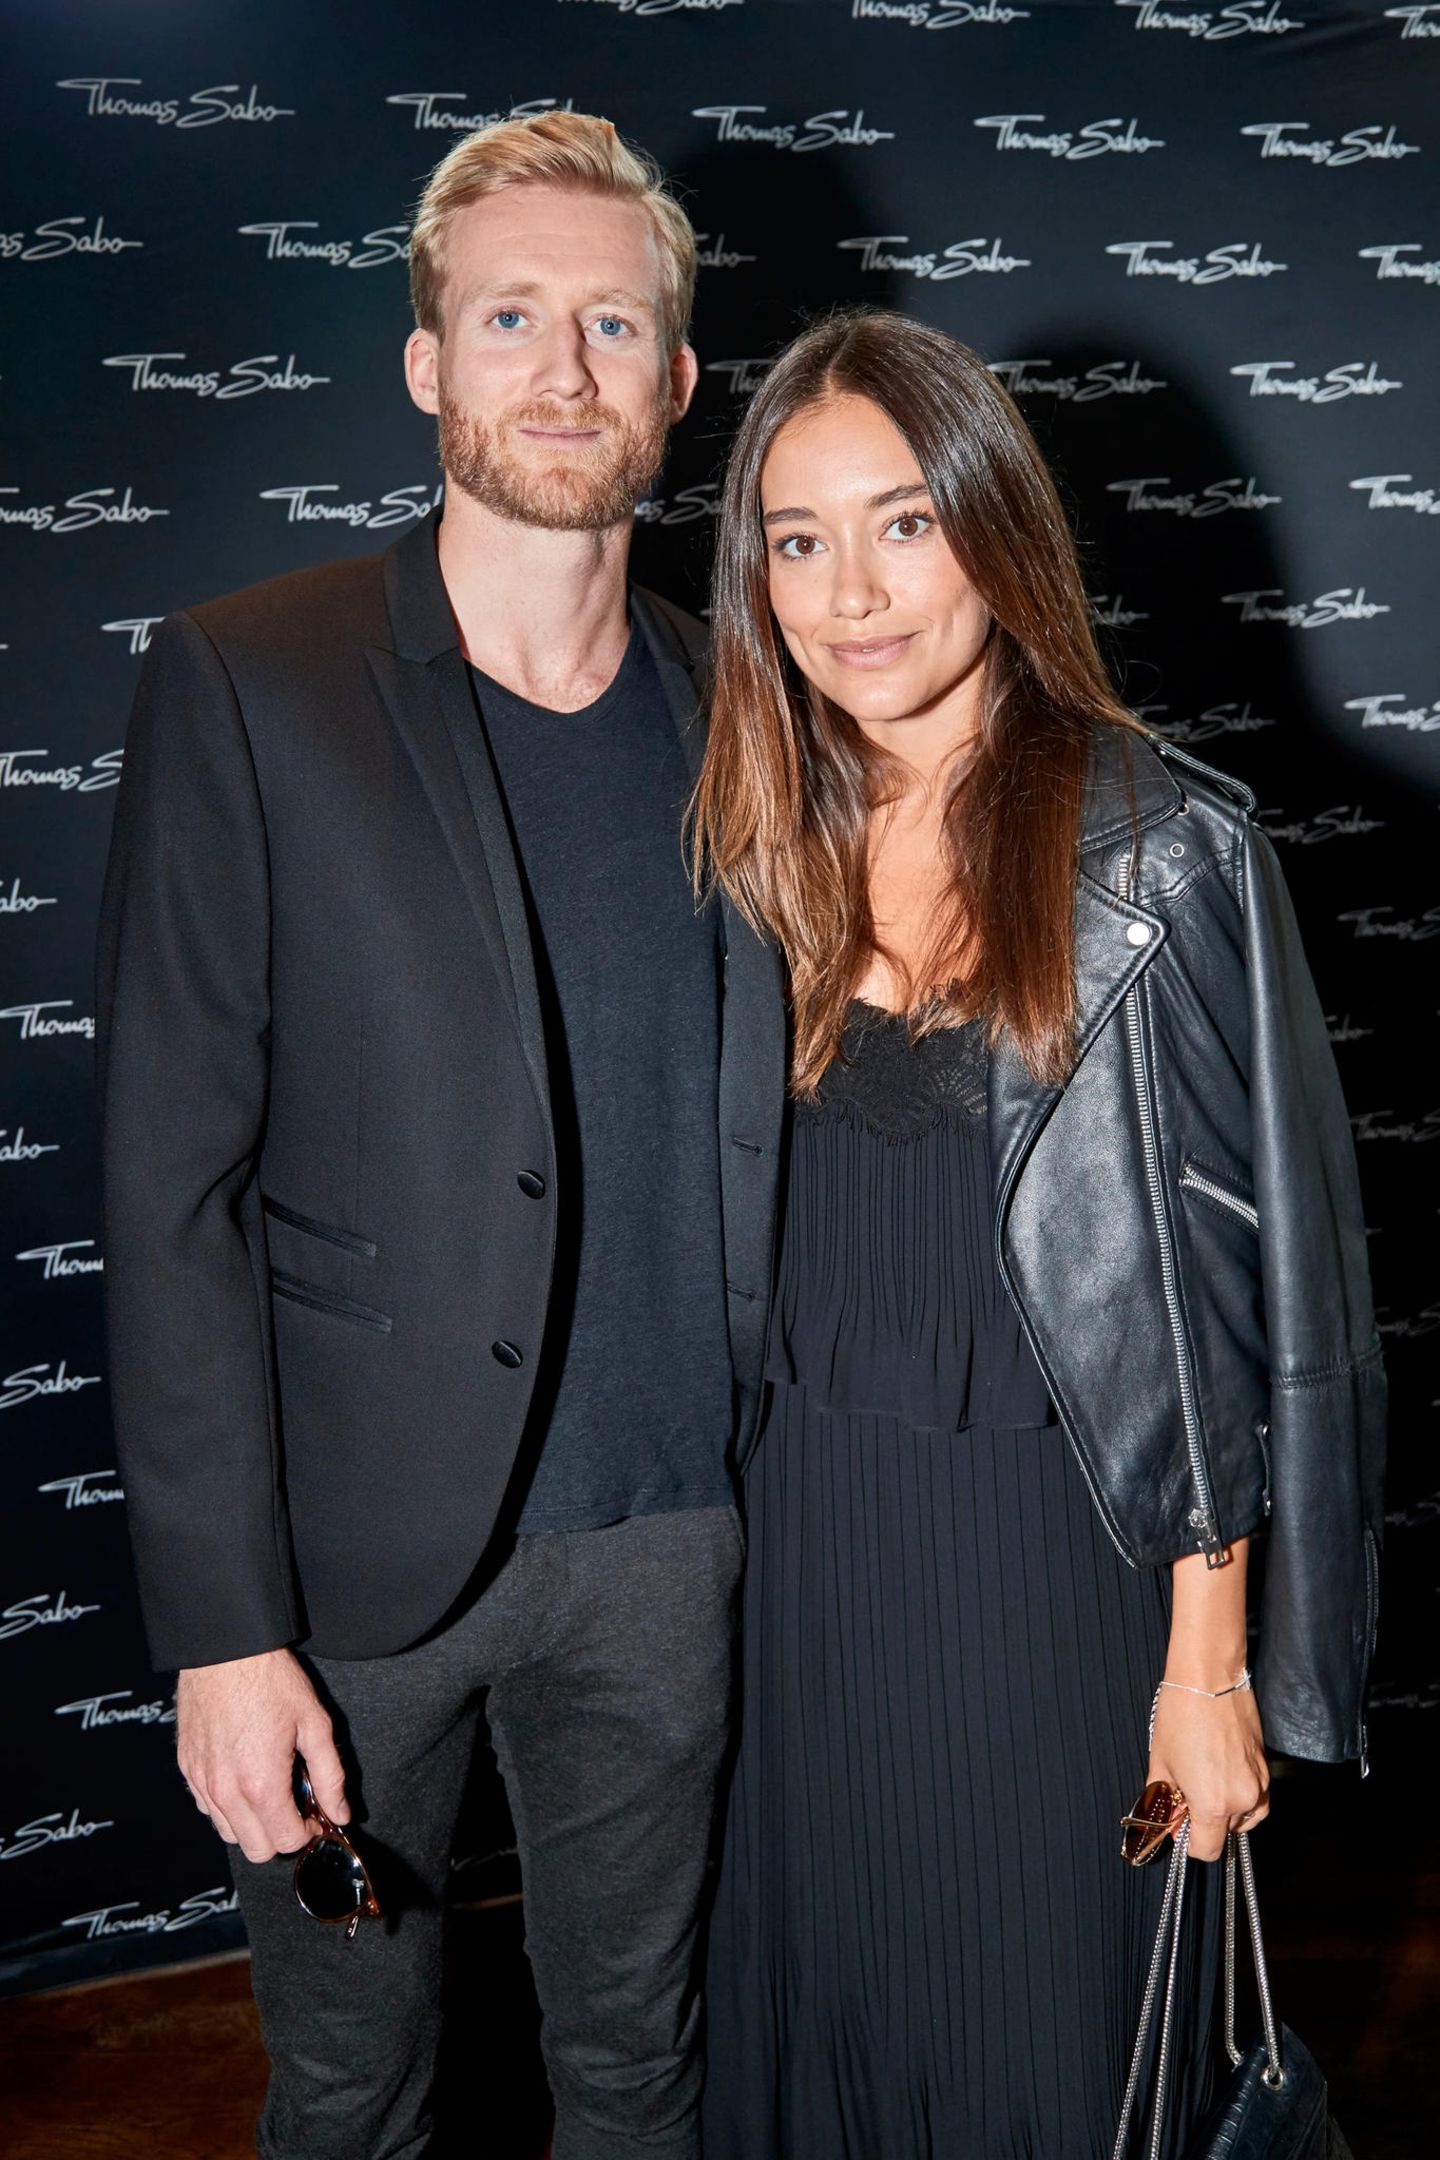 Fußballstar André Schürrle kam mit seiner Freundin Anna Sharypova zum Cocktail von Thomas Sabo.